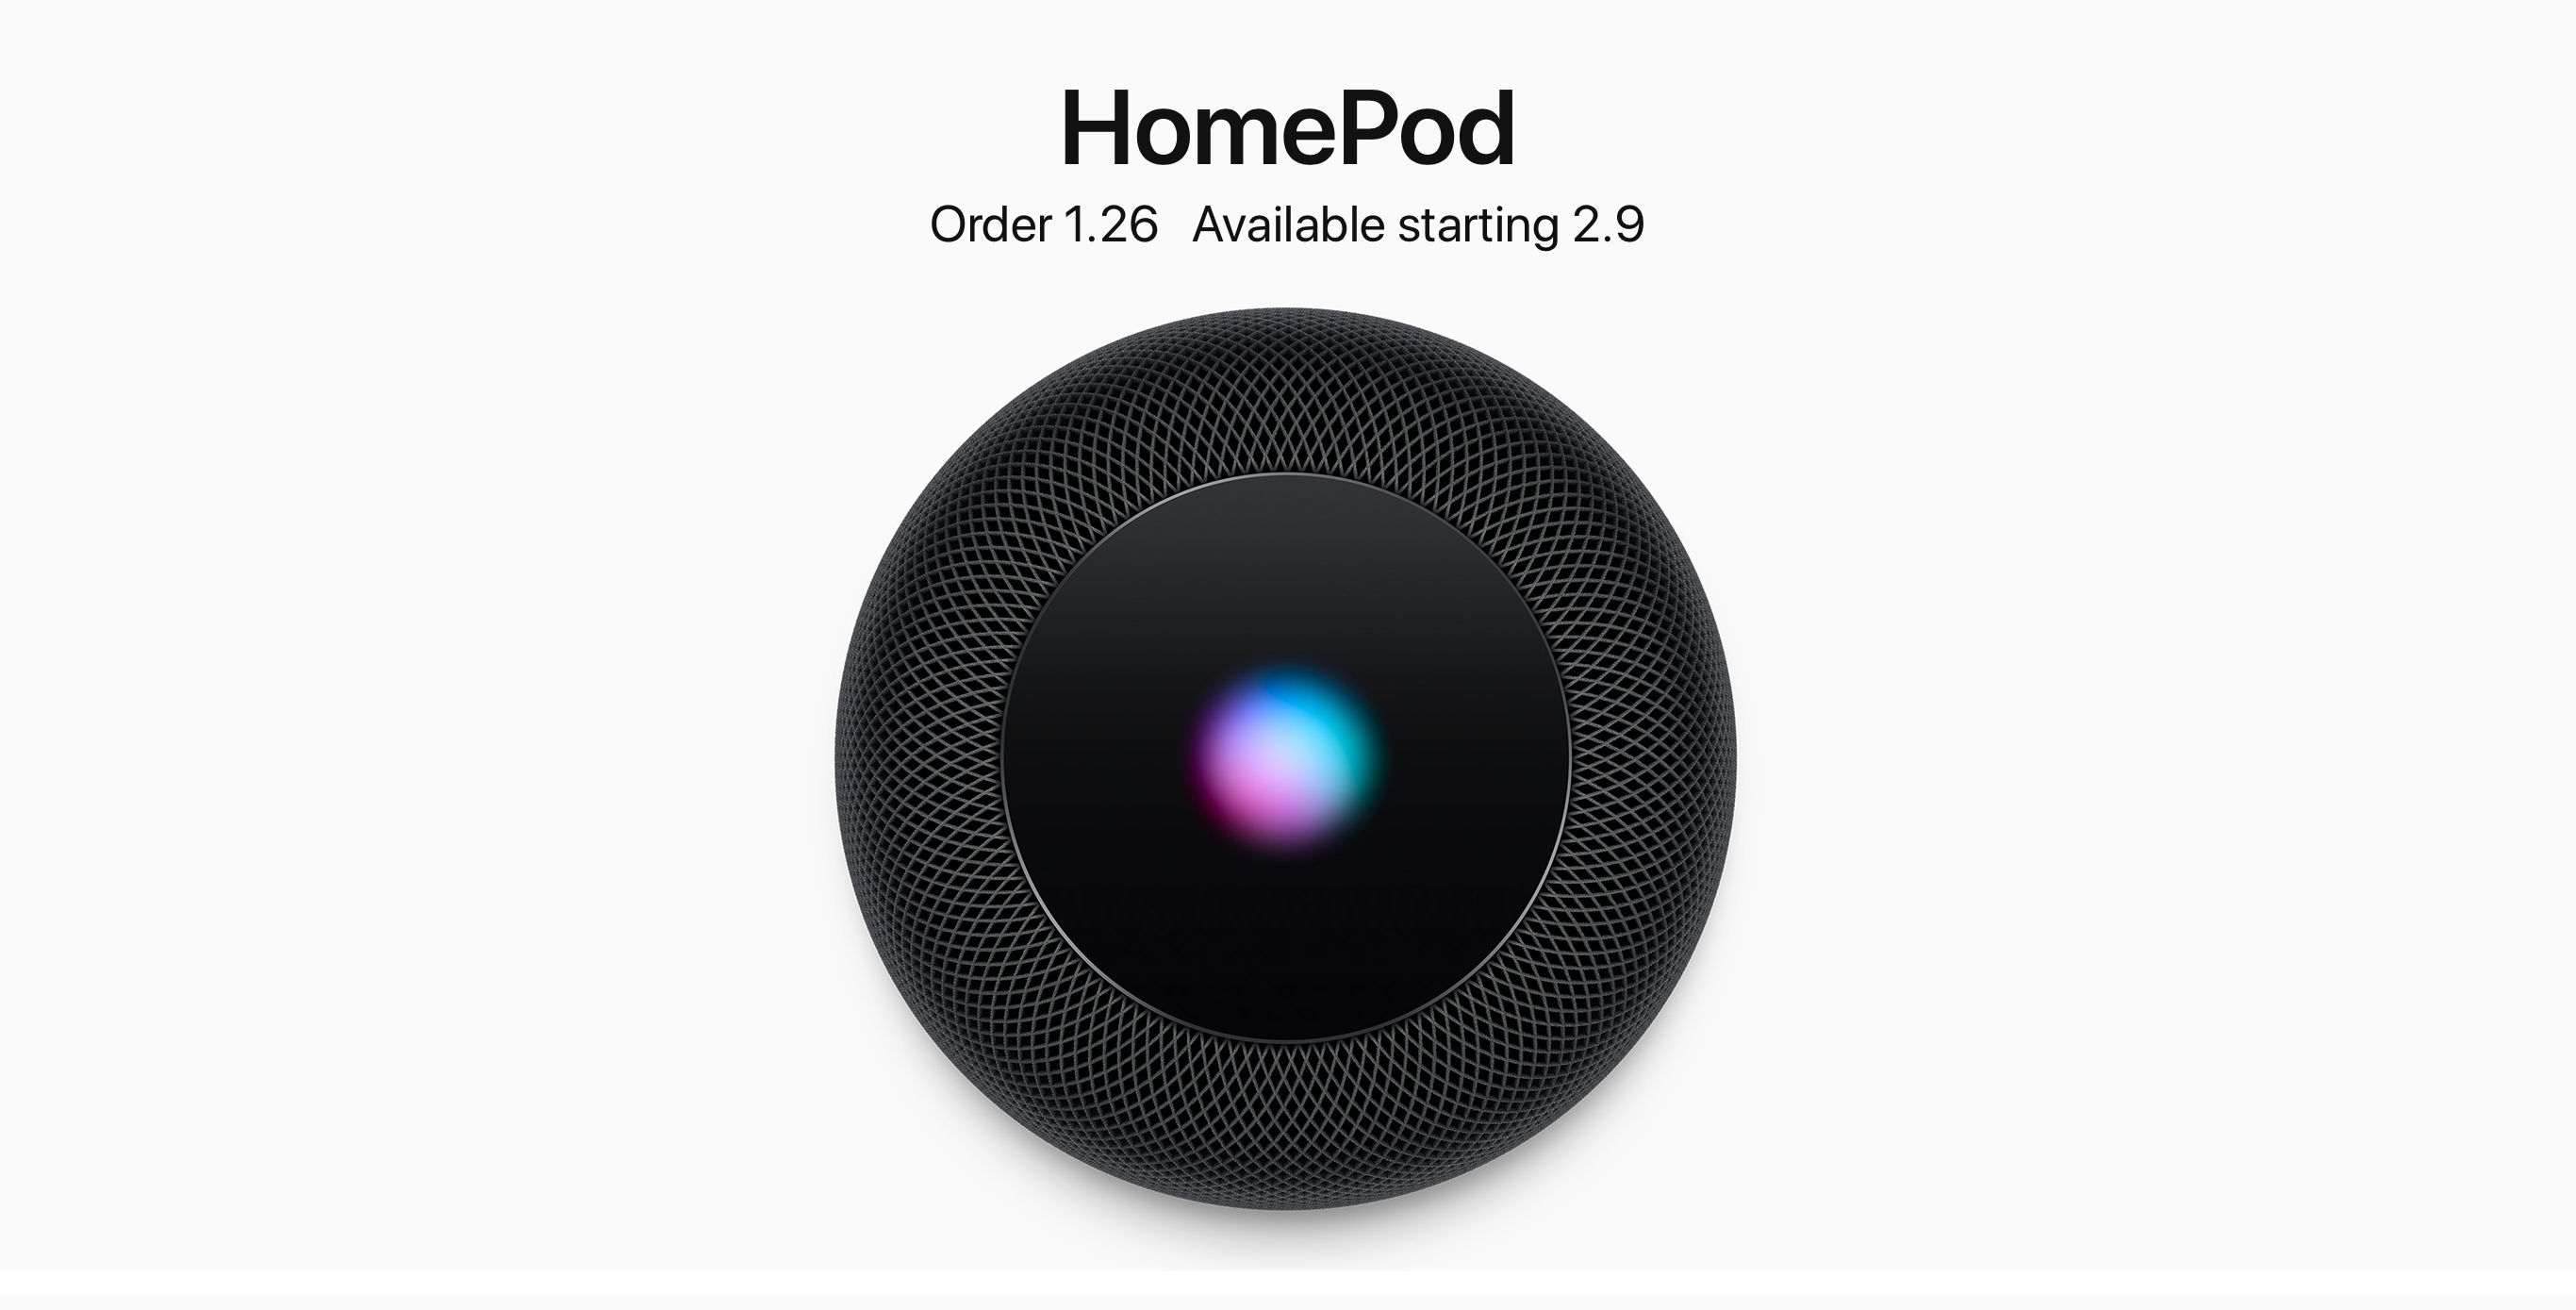 苹果HomePod即将发售 有望扭转智能音箱价格战